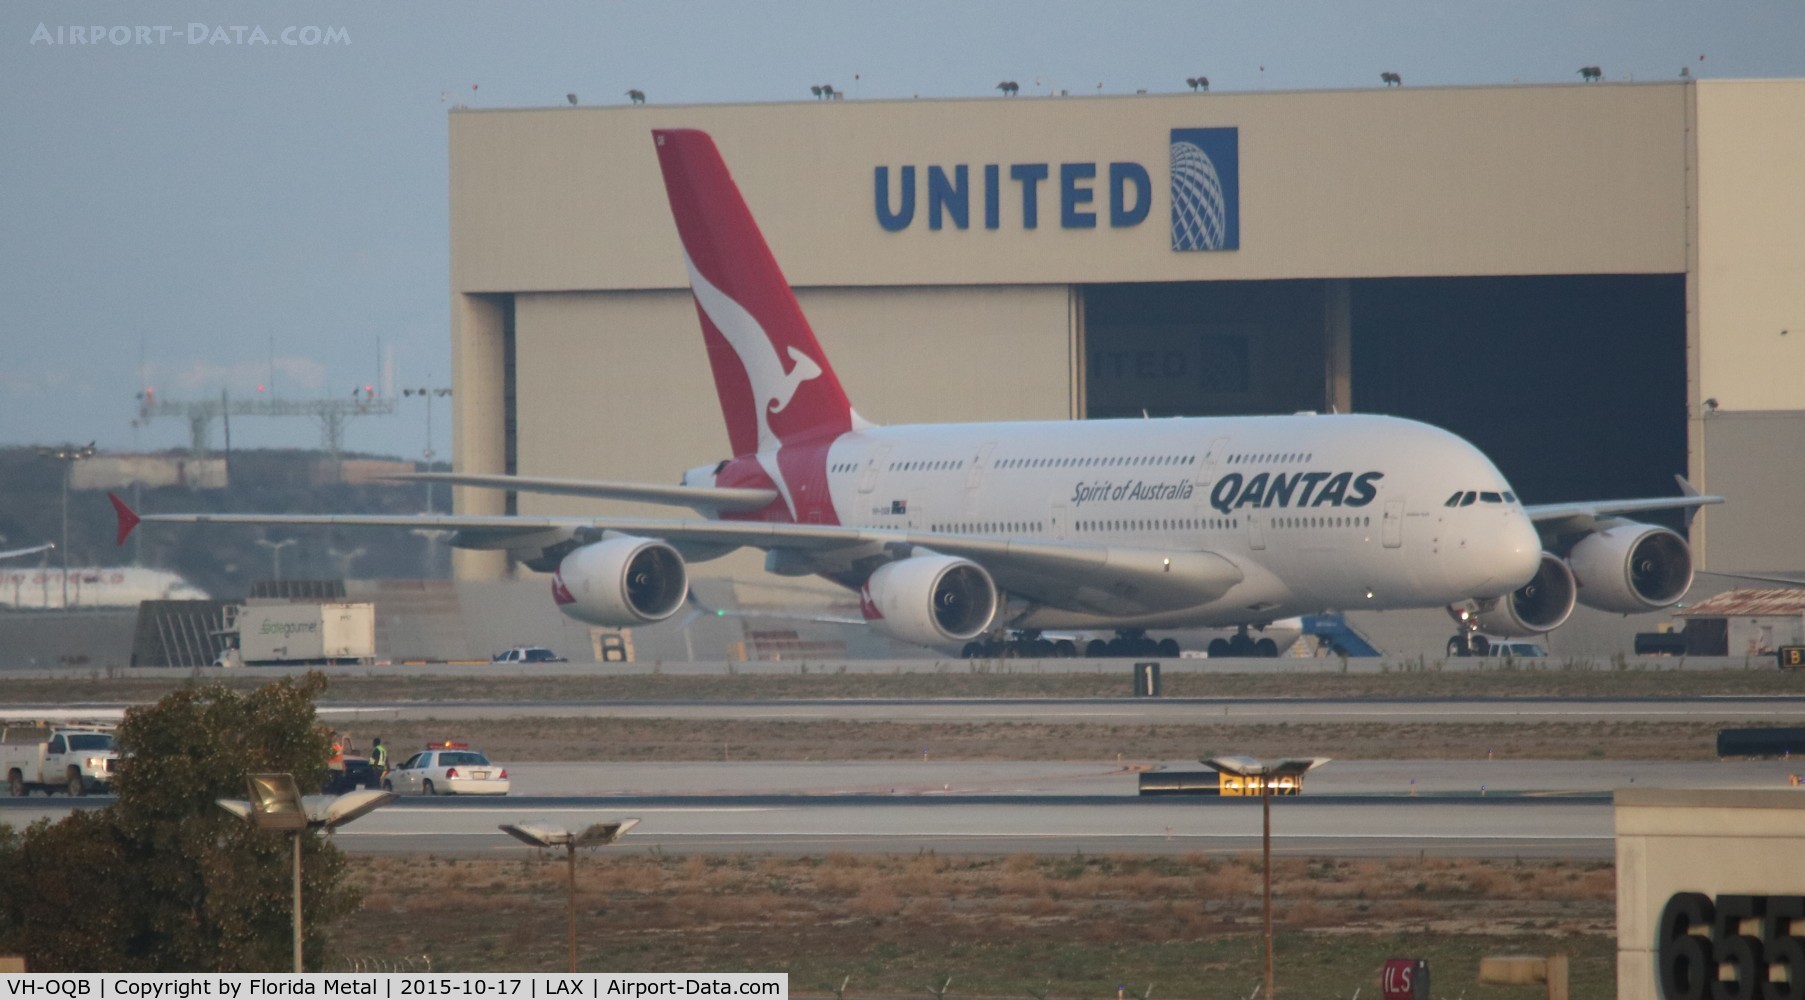 VH-OQB, 2008 Airbus A380-842 C/N 015, Qantas